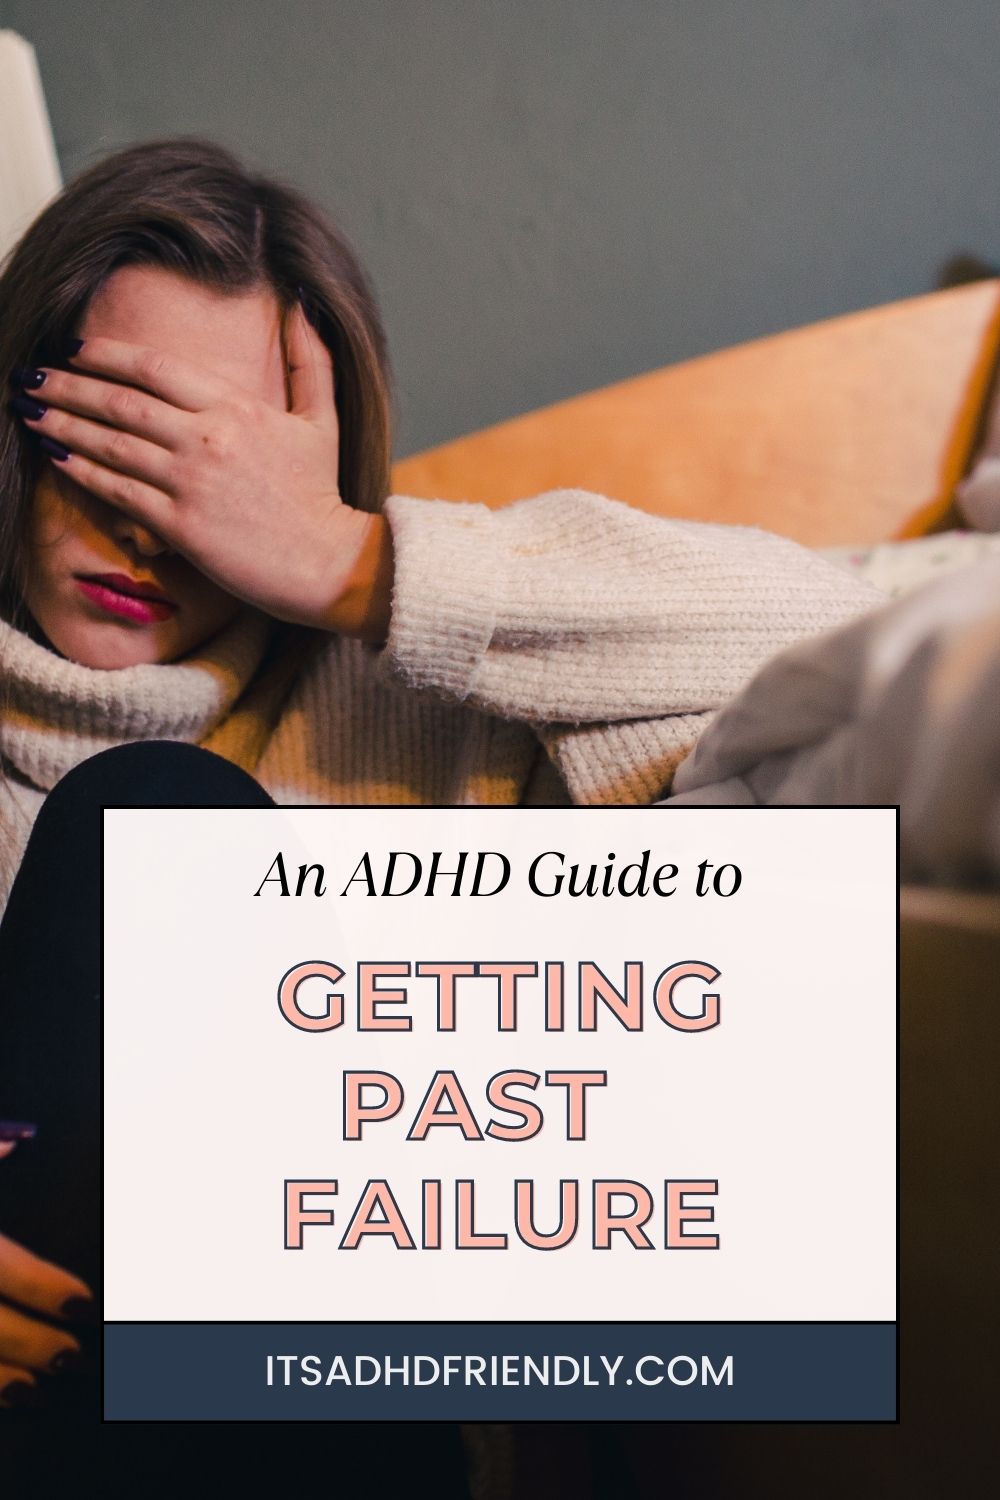 ADHD woman and failing